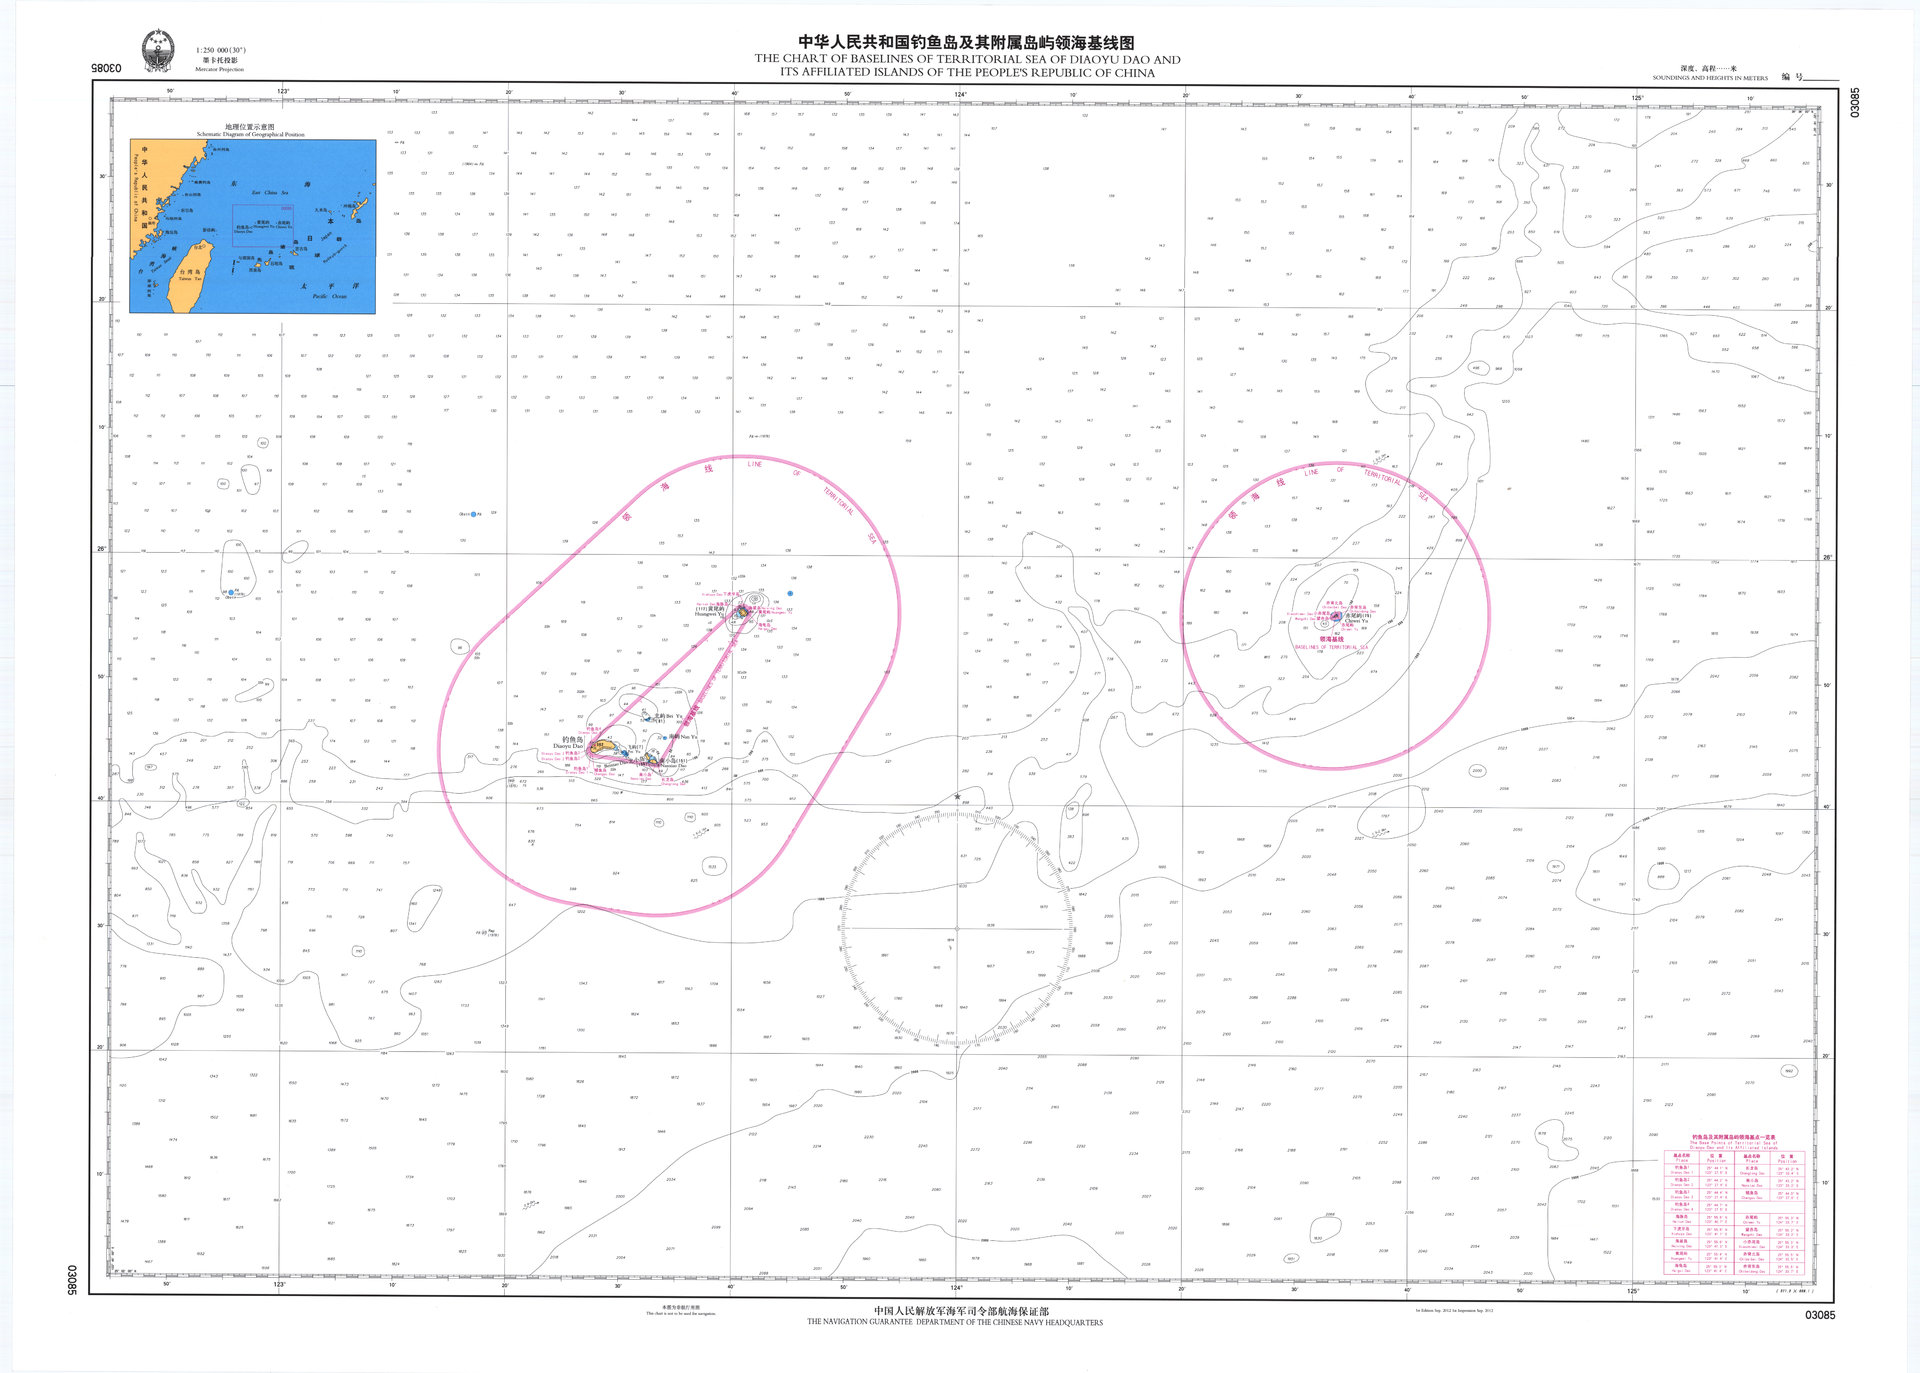 聯合國官網公布的釣魚島及其附屬島嶼領海基線圖